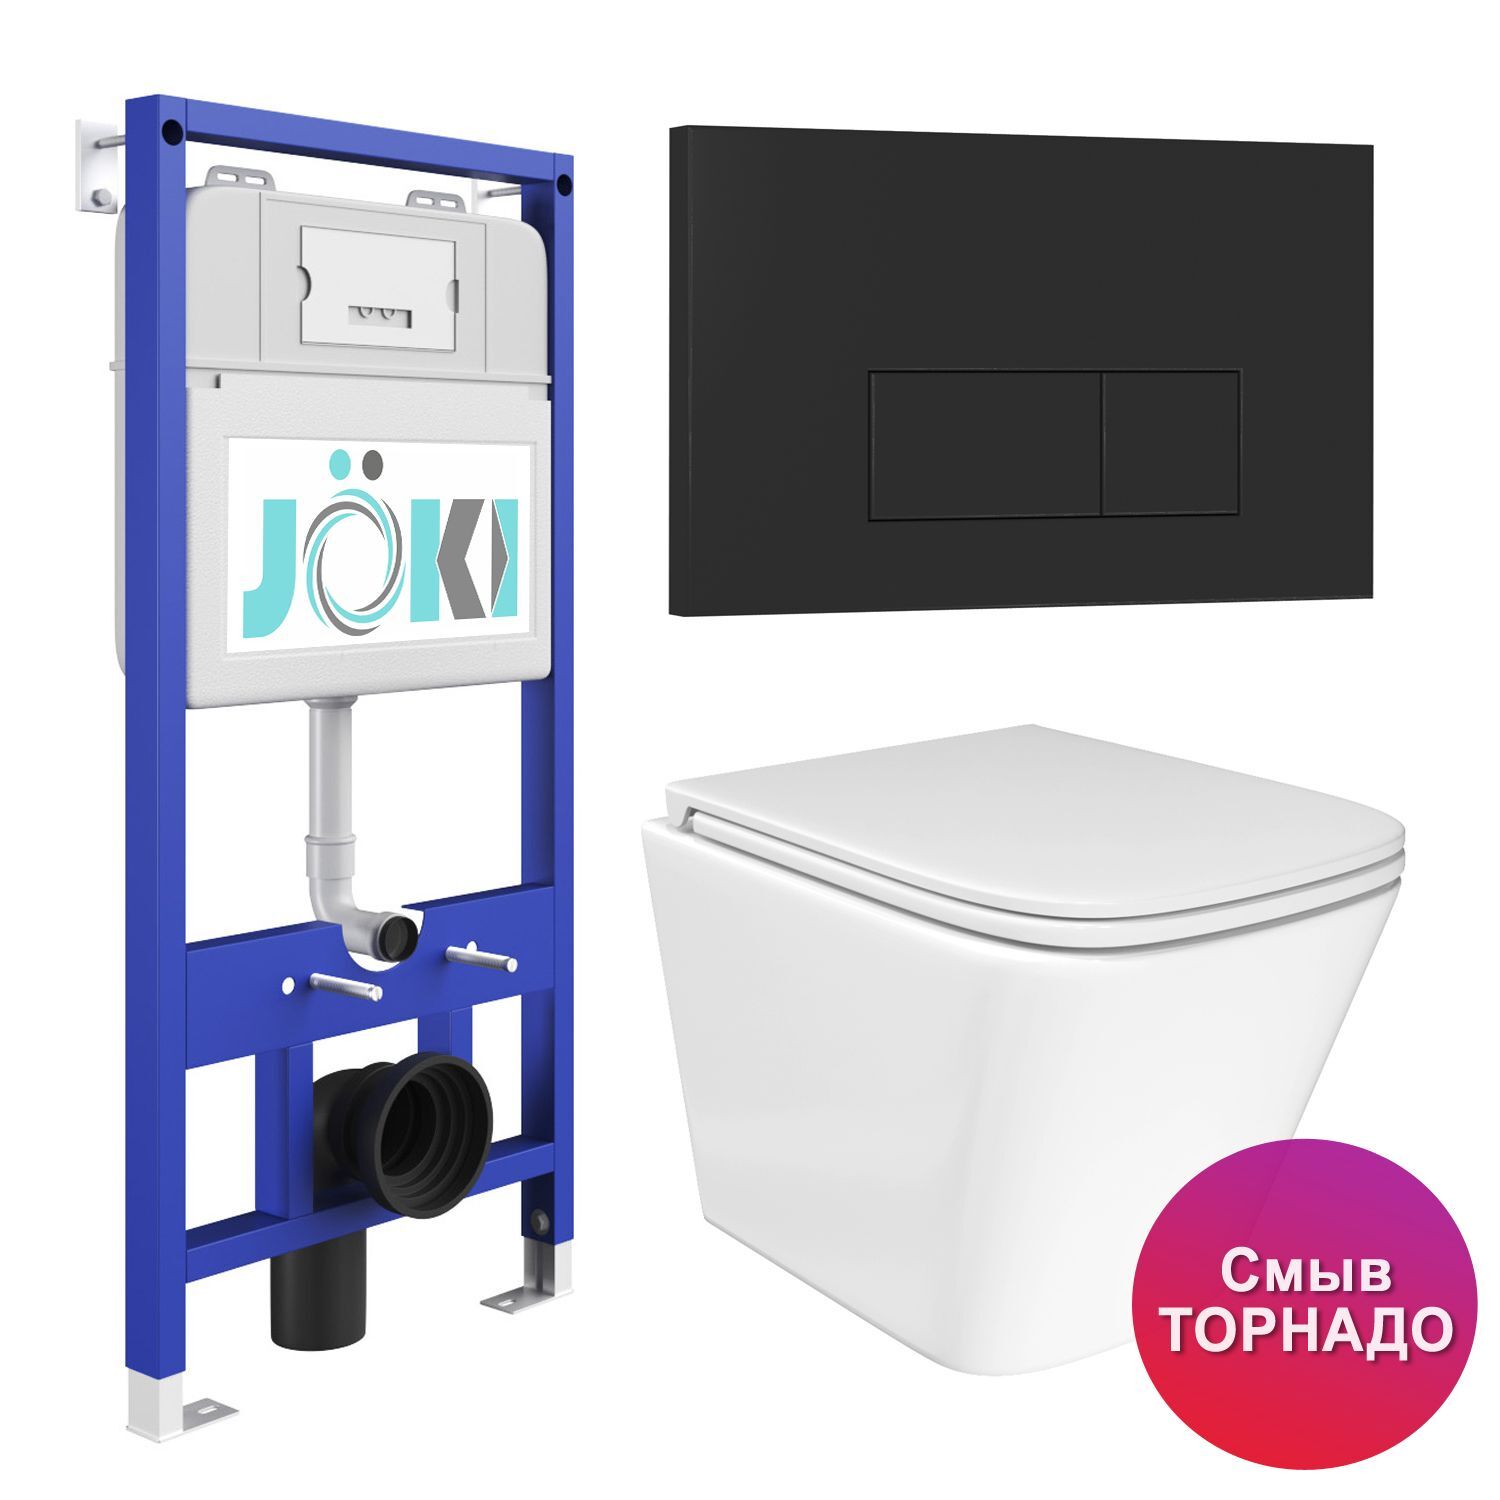 Комплект: JOKI Инсталляция JK01150+Кнопка JK203507BM черный+Verna T JK3031025 белый унитаз, смыв Торнадо